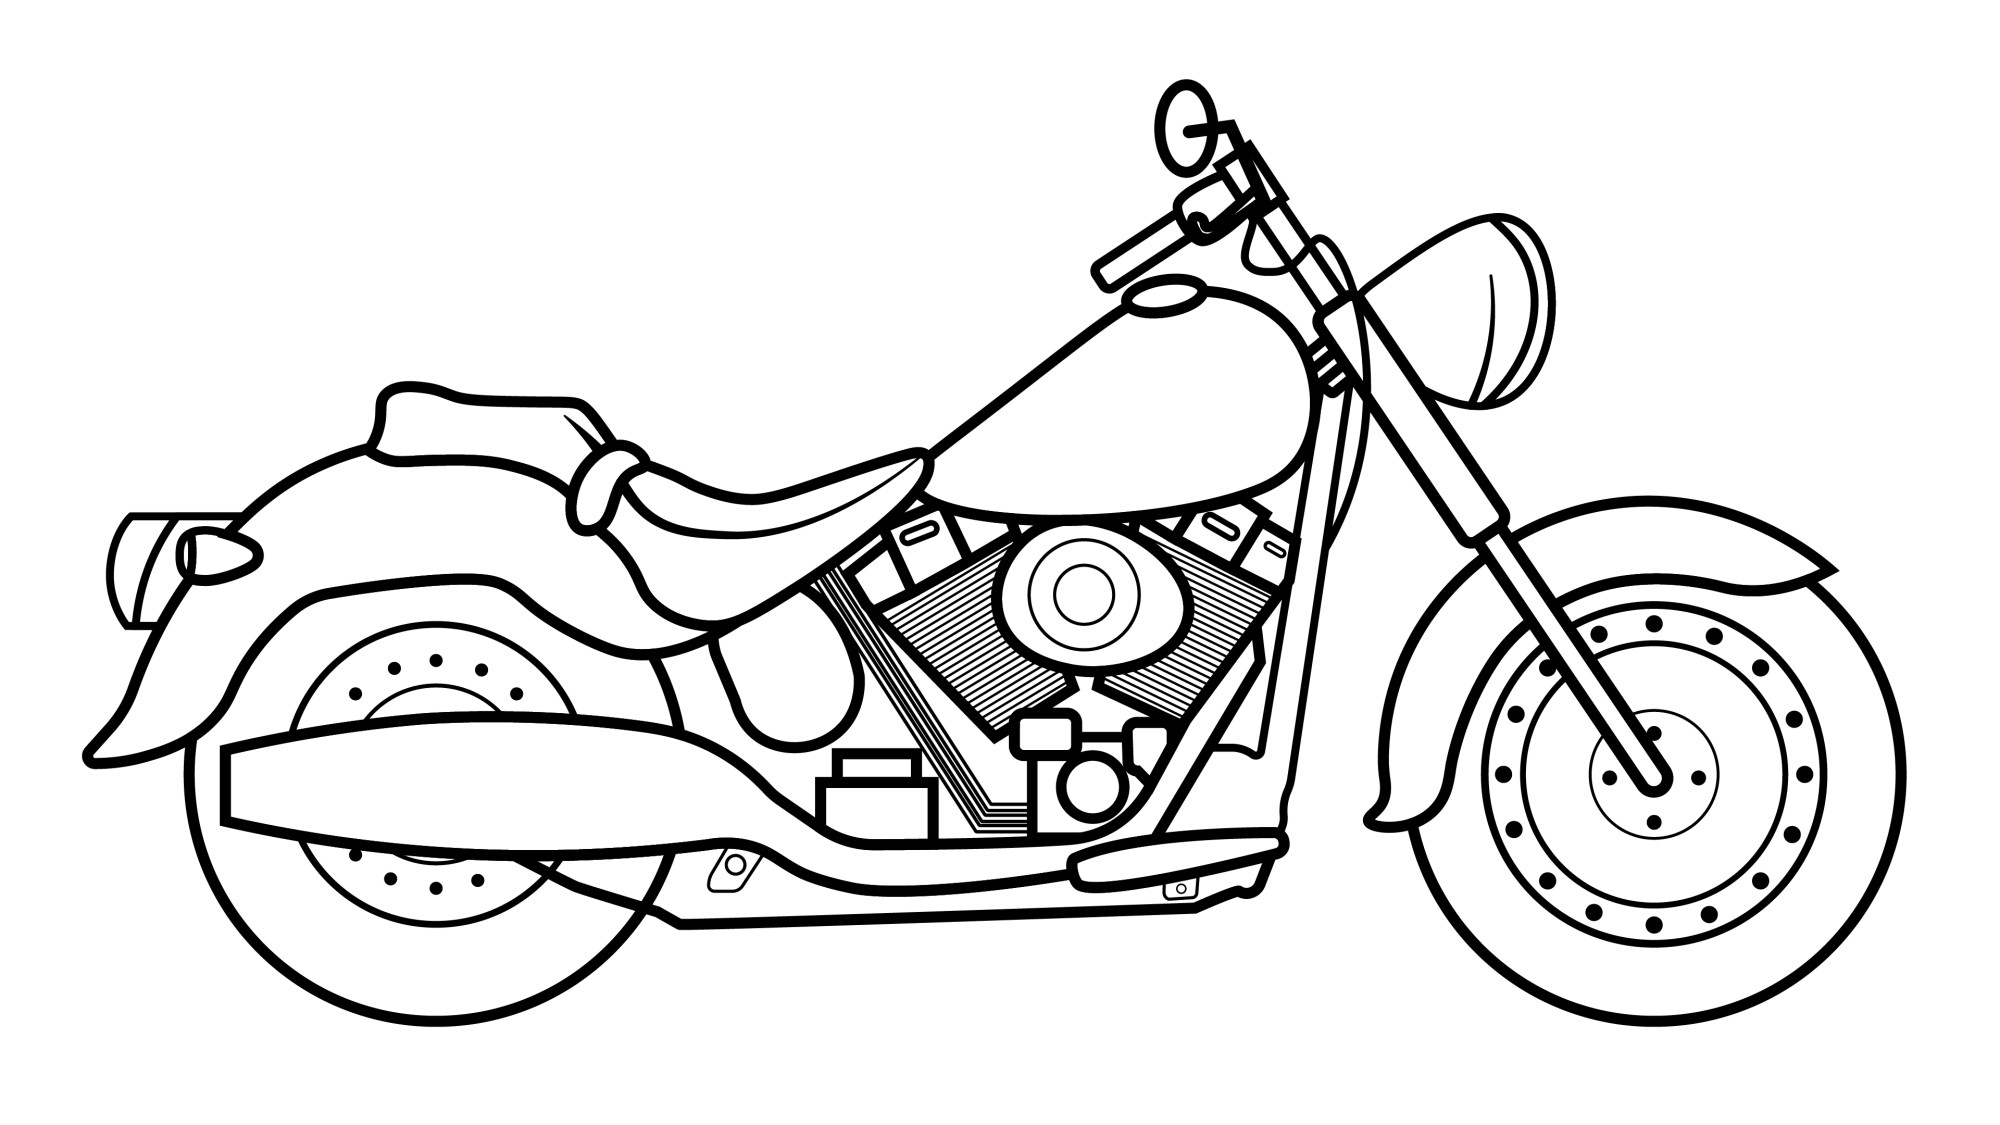 Раскраска для детей: мотоцикл Харлей-Дэвидсон